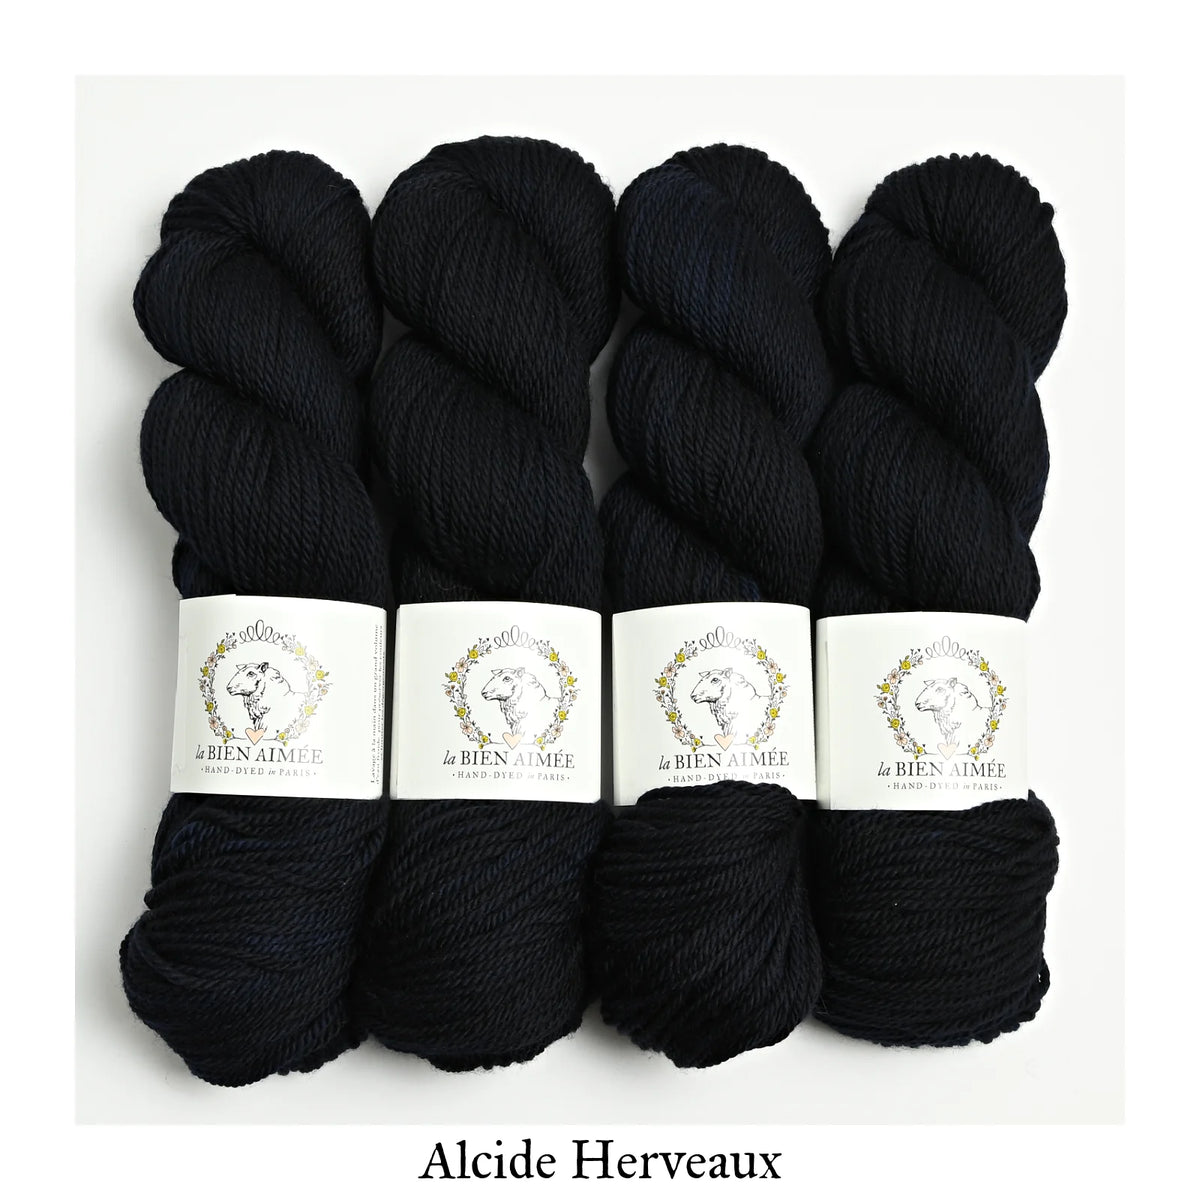 La Bien Aimee Merino Aran– Black Mountain Yarn Shop